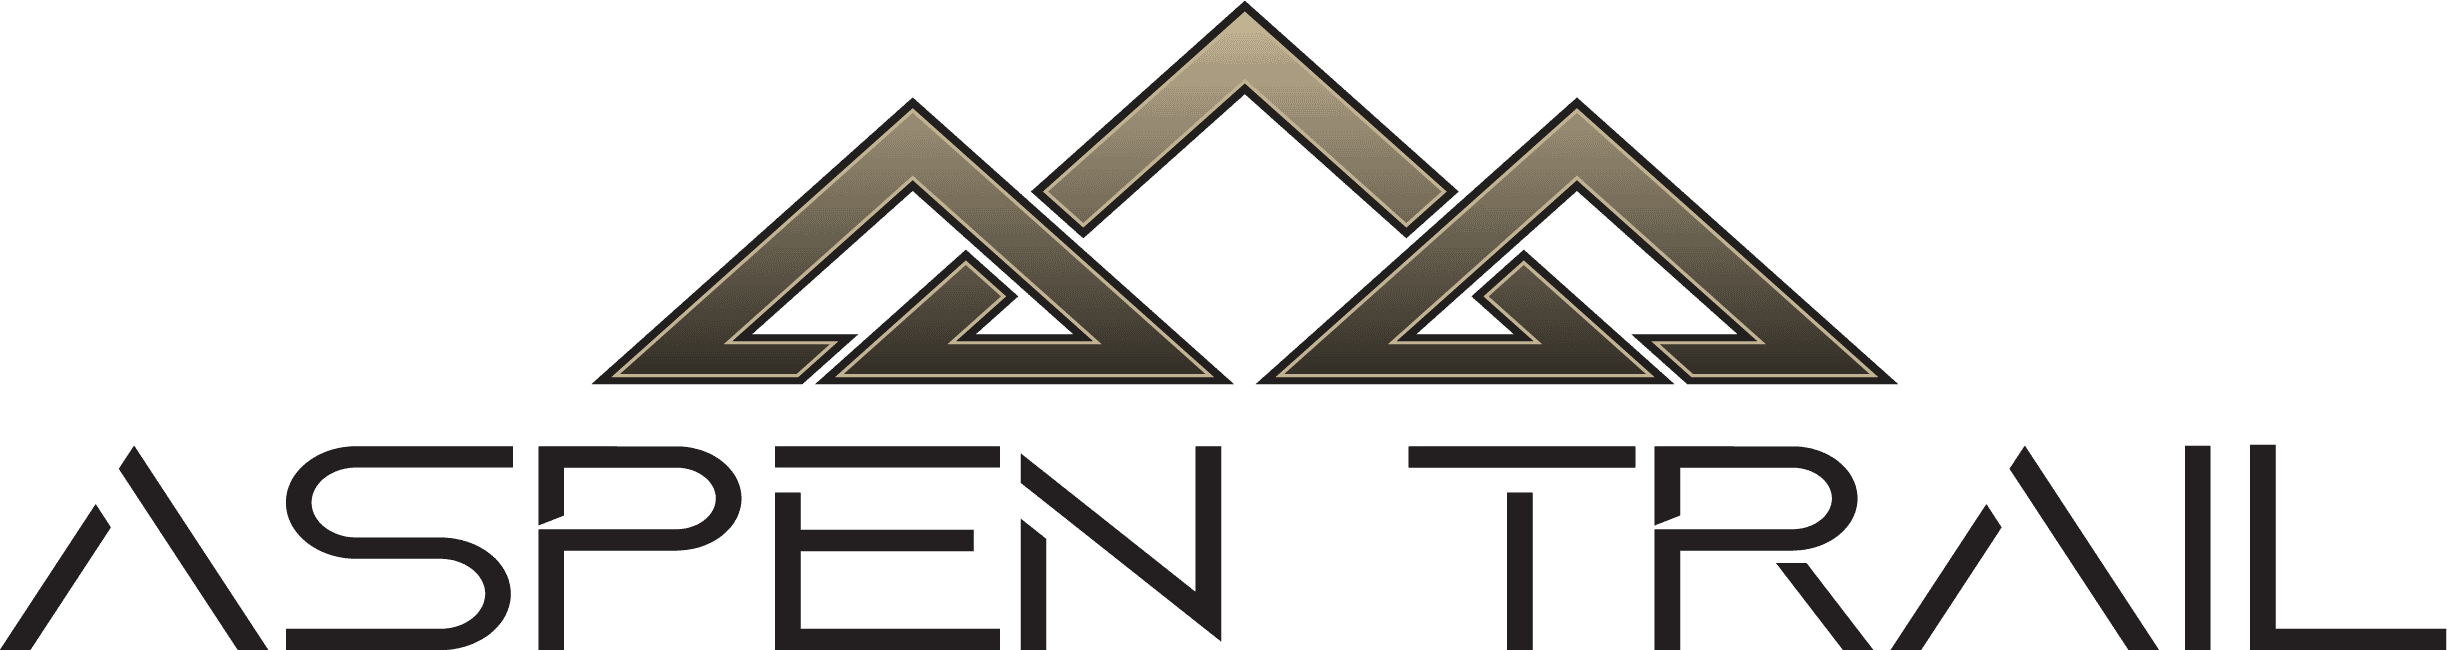 Dutchmen RV Aspen Trail logo